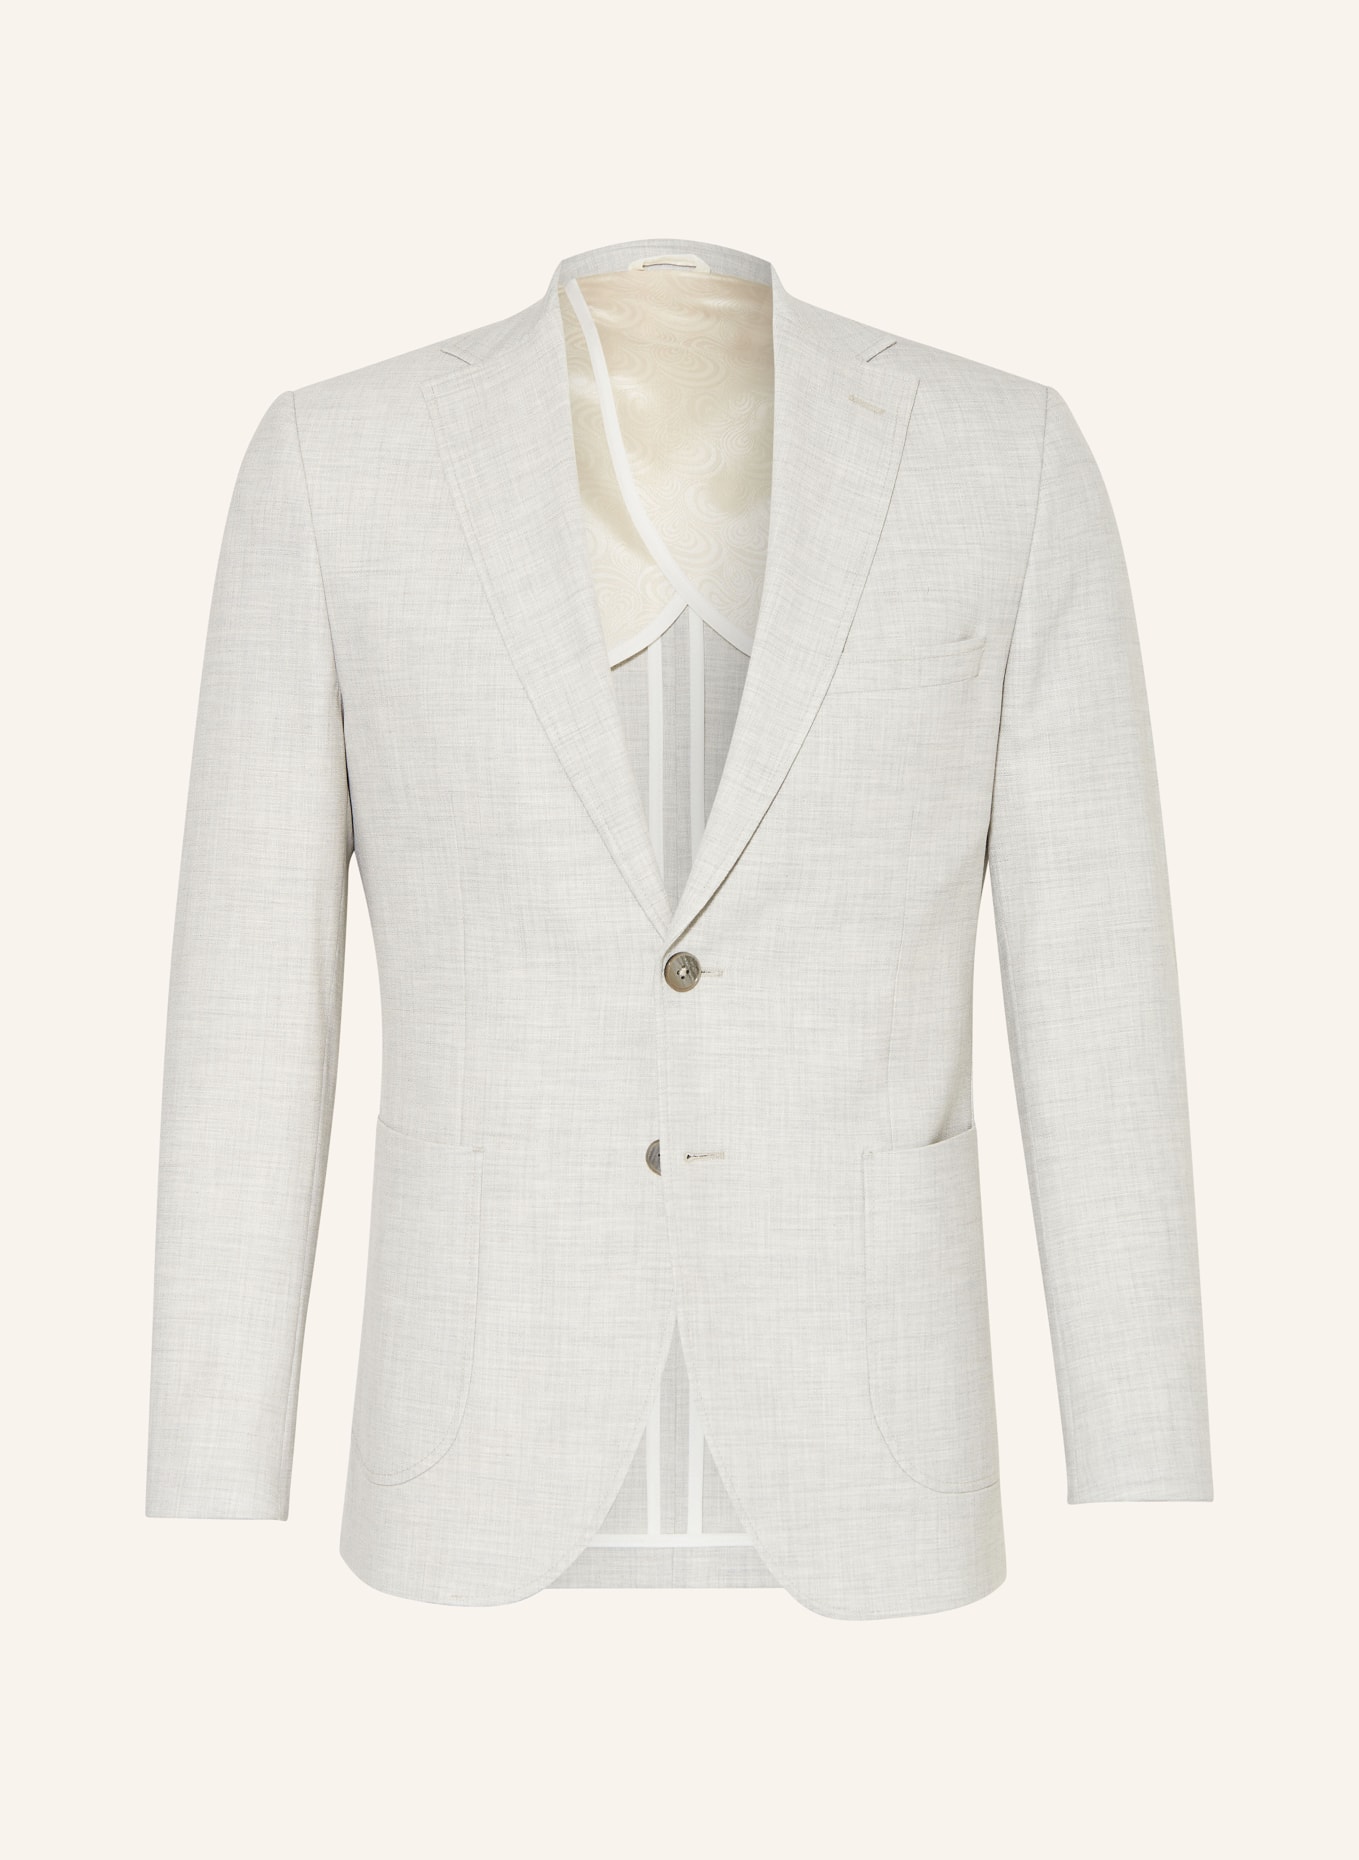 PAUL Suit jacket Slim Fit, Color: LIGHT GRAY (Image 1)